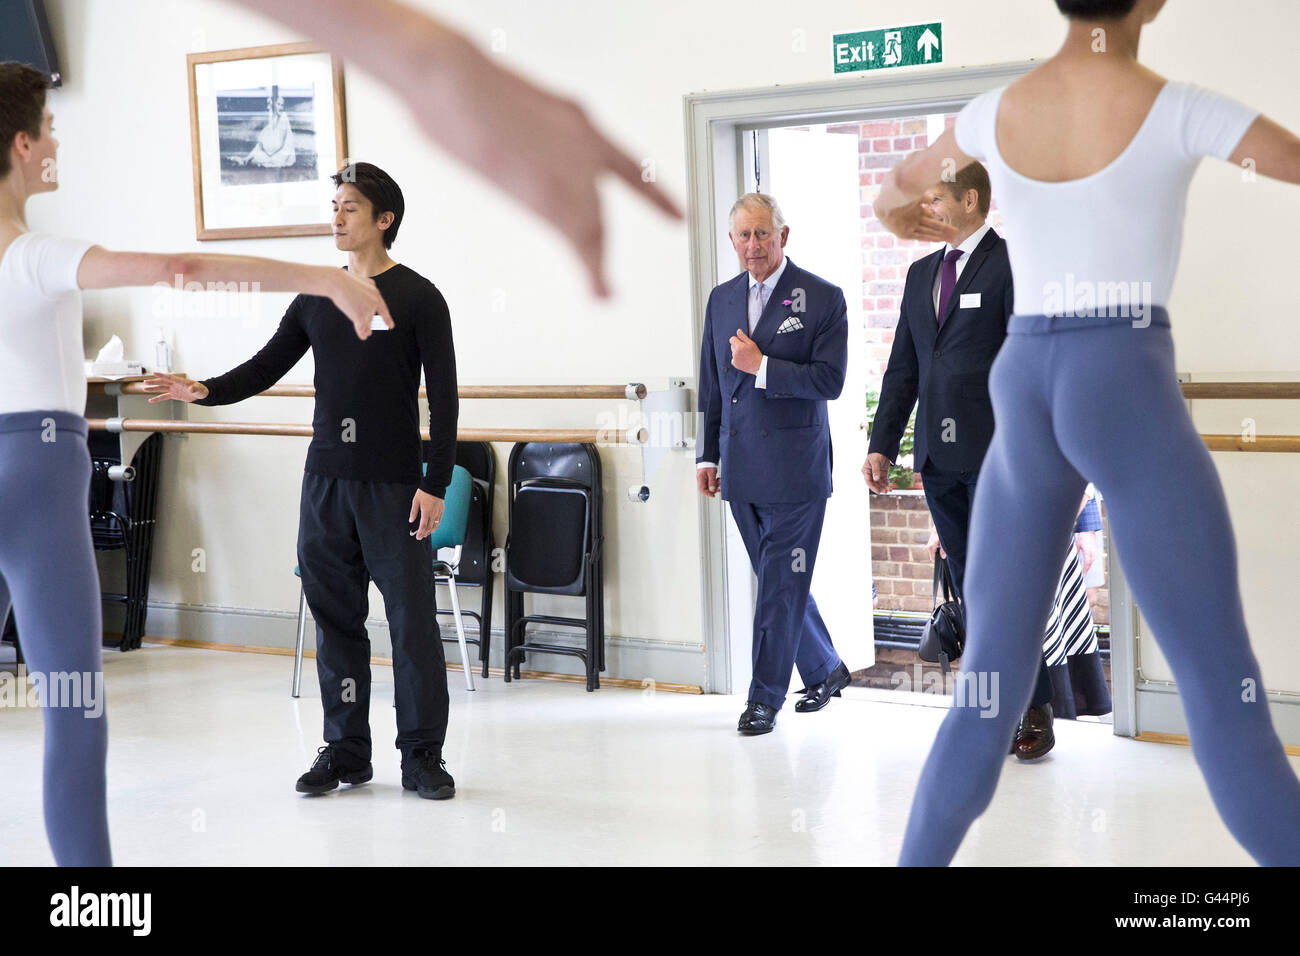 Le Prince de Galles au cours d'une visite à la Royal Ballet School, White Lodge campus à Richmond Park, au sud ouest de Londres. Banque D'Images